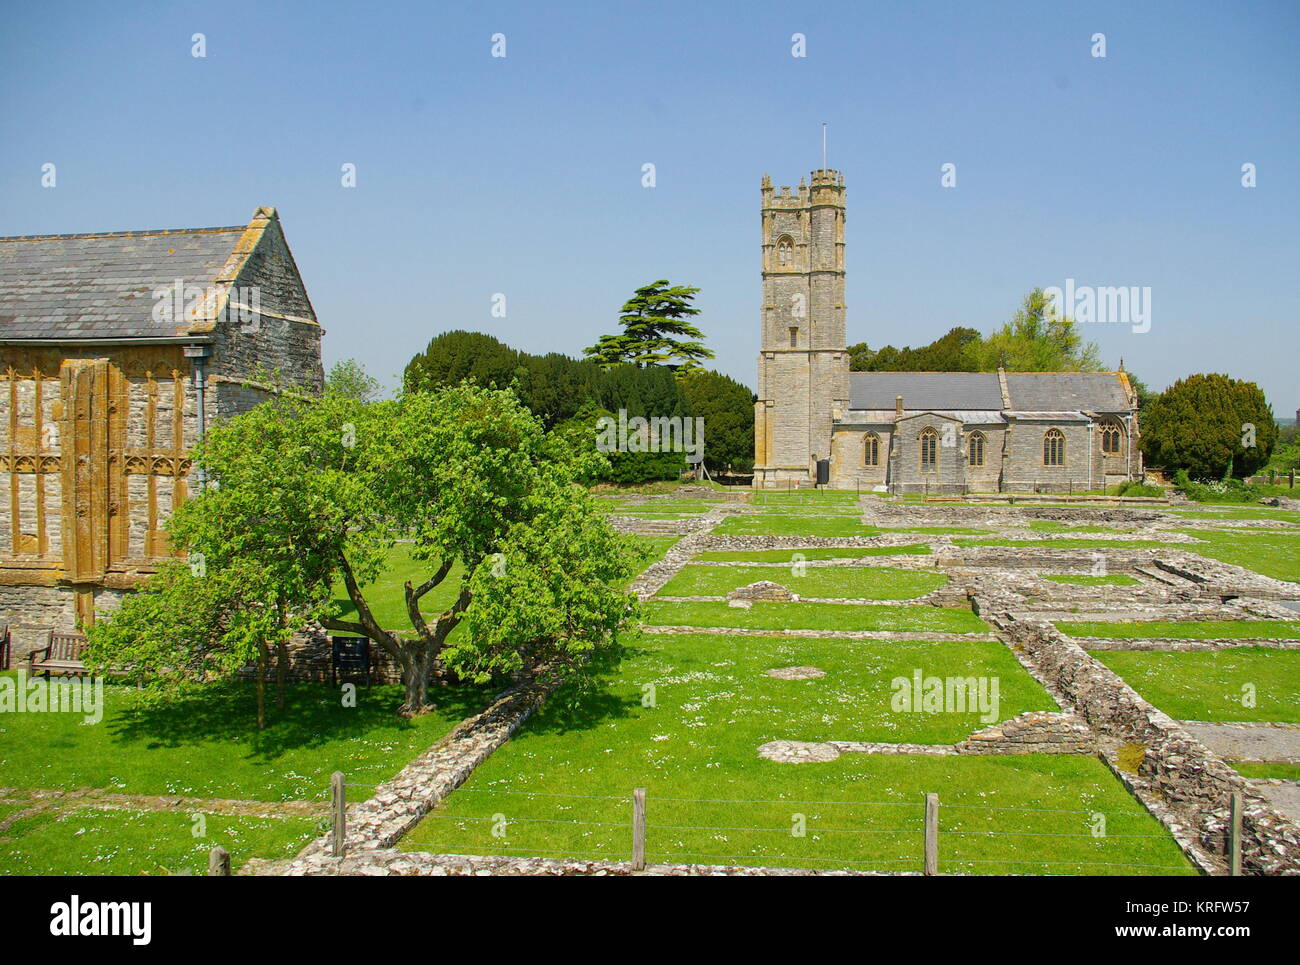 Vista dell'abbazia di Muchelney (a sinistra), un edificio classificato di grado i nel villaggio di Muchelney, Somerset, con la chiesa parrocchiale di San Pietro e San Paolo in lontananza sulla destra. Osservando i resti scavati dell'abbazia, risalenti all'epoca medievale. Foto Stock